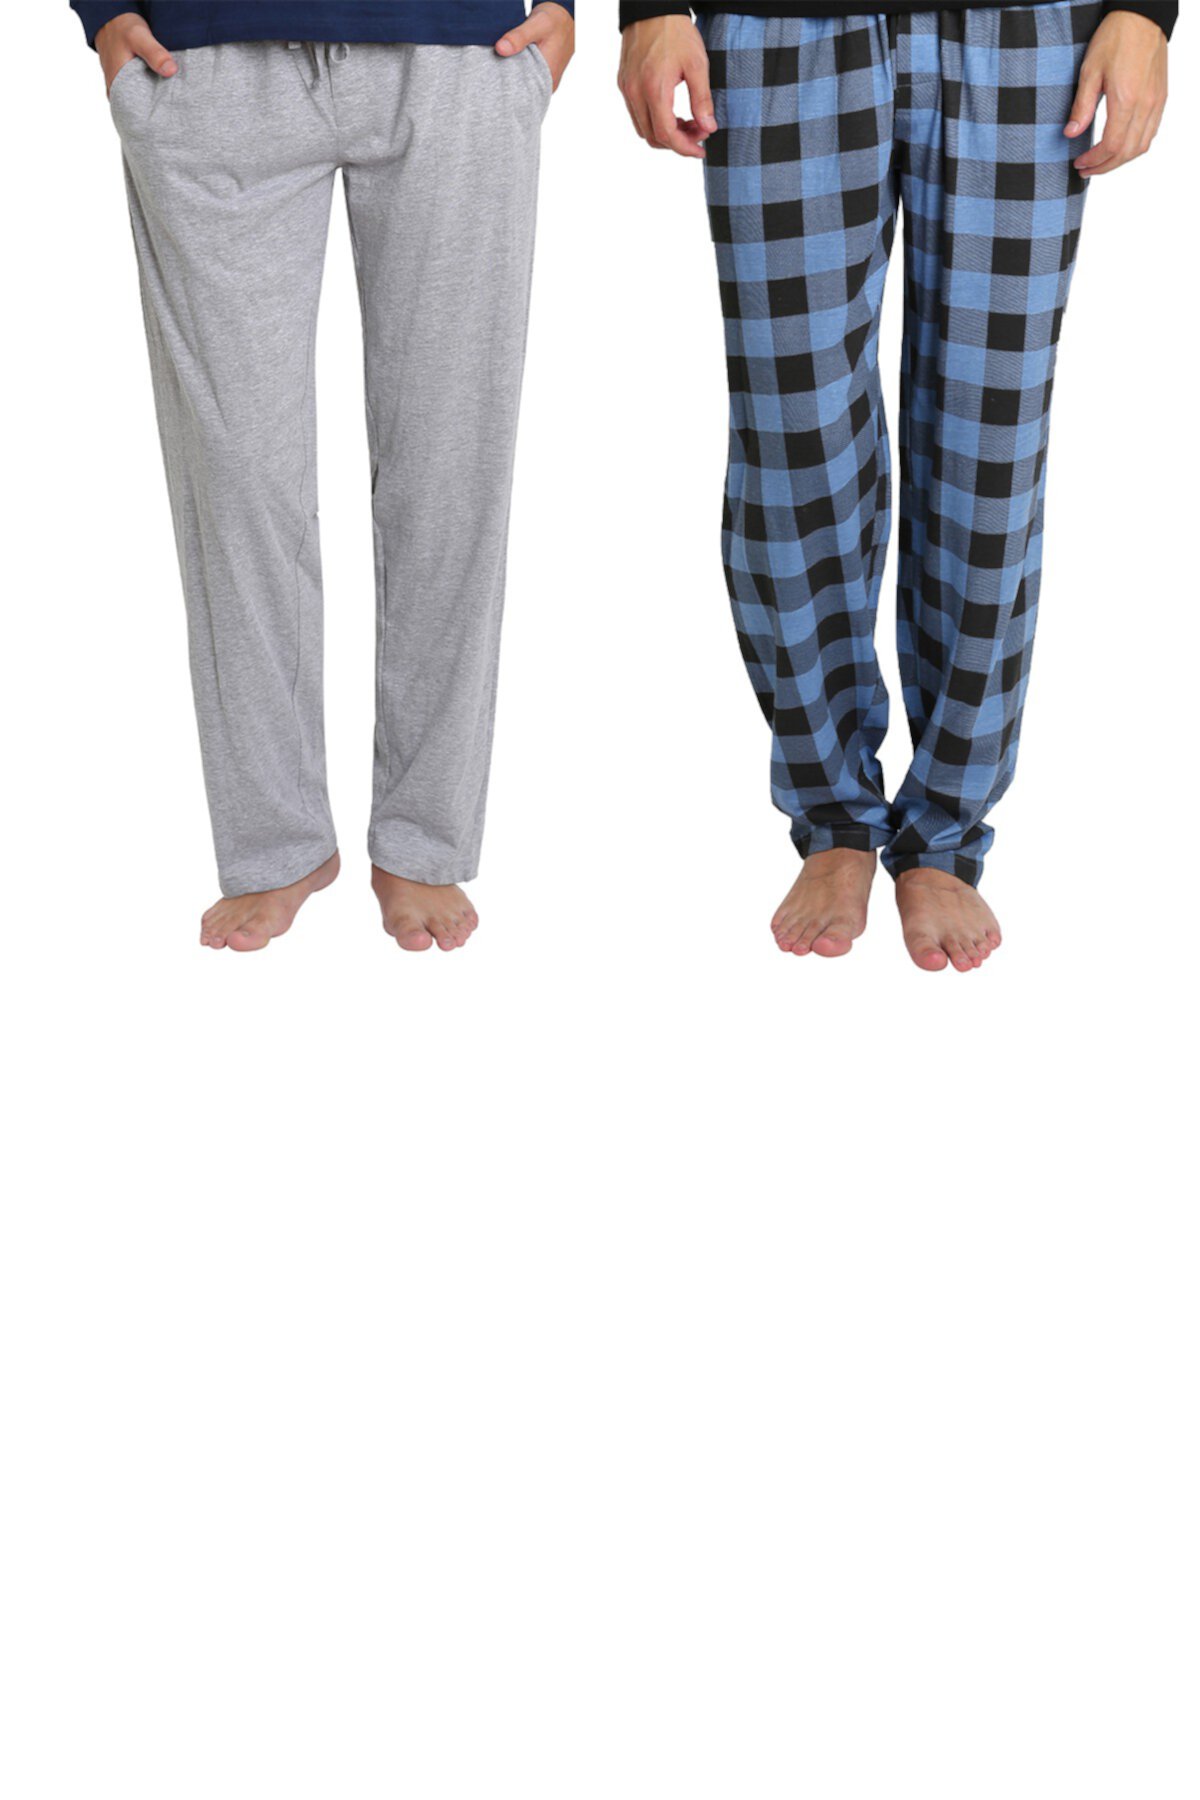 Вязаные пижамные штаны - 2 шт. В упаковке SLEEPHERO